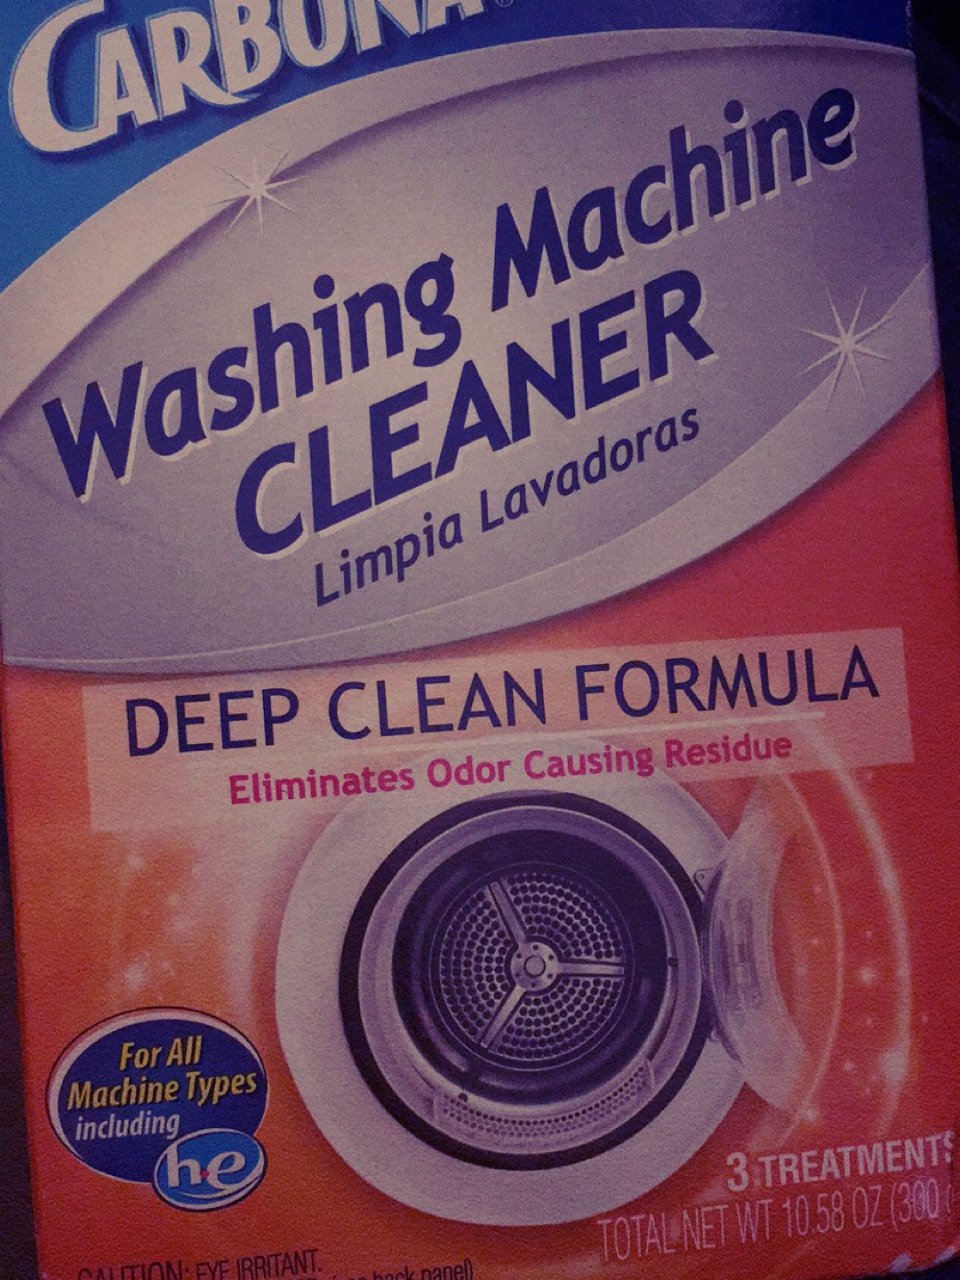 Washing Machine Clea...